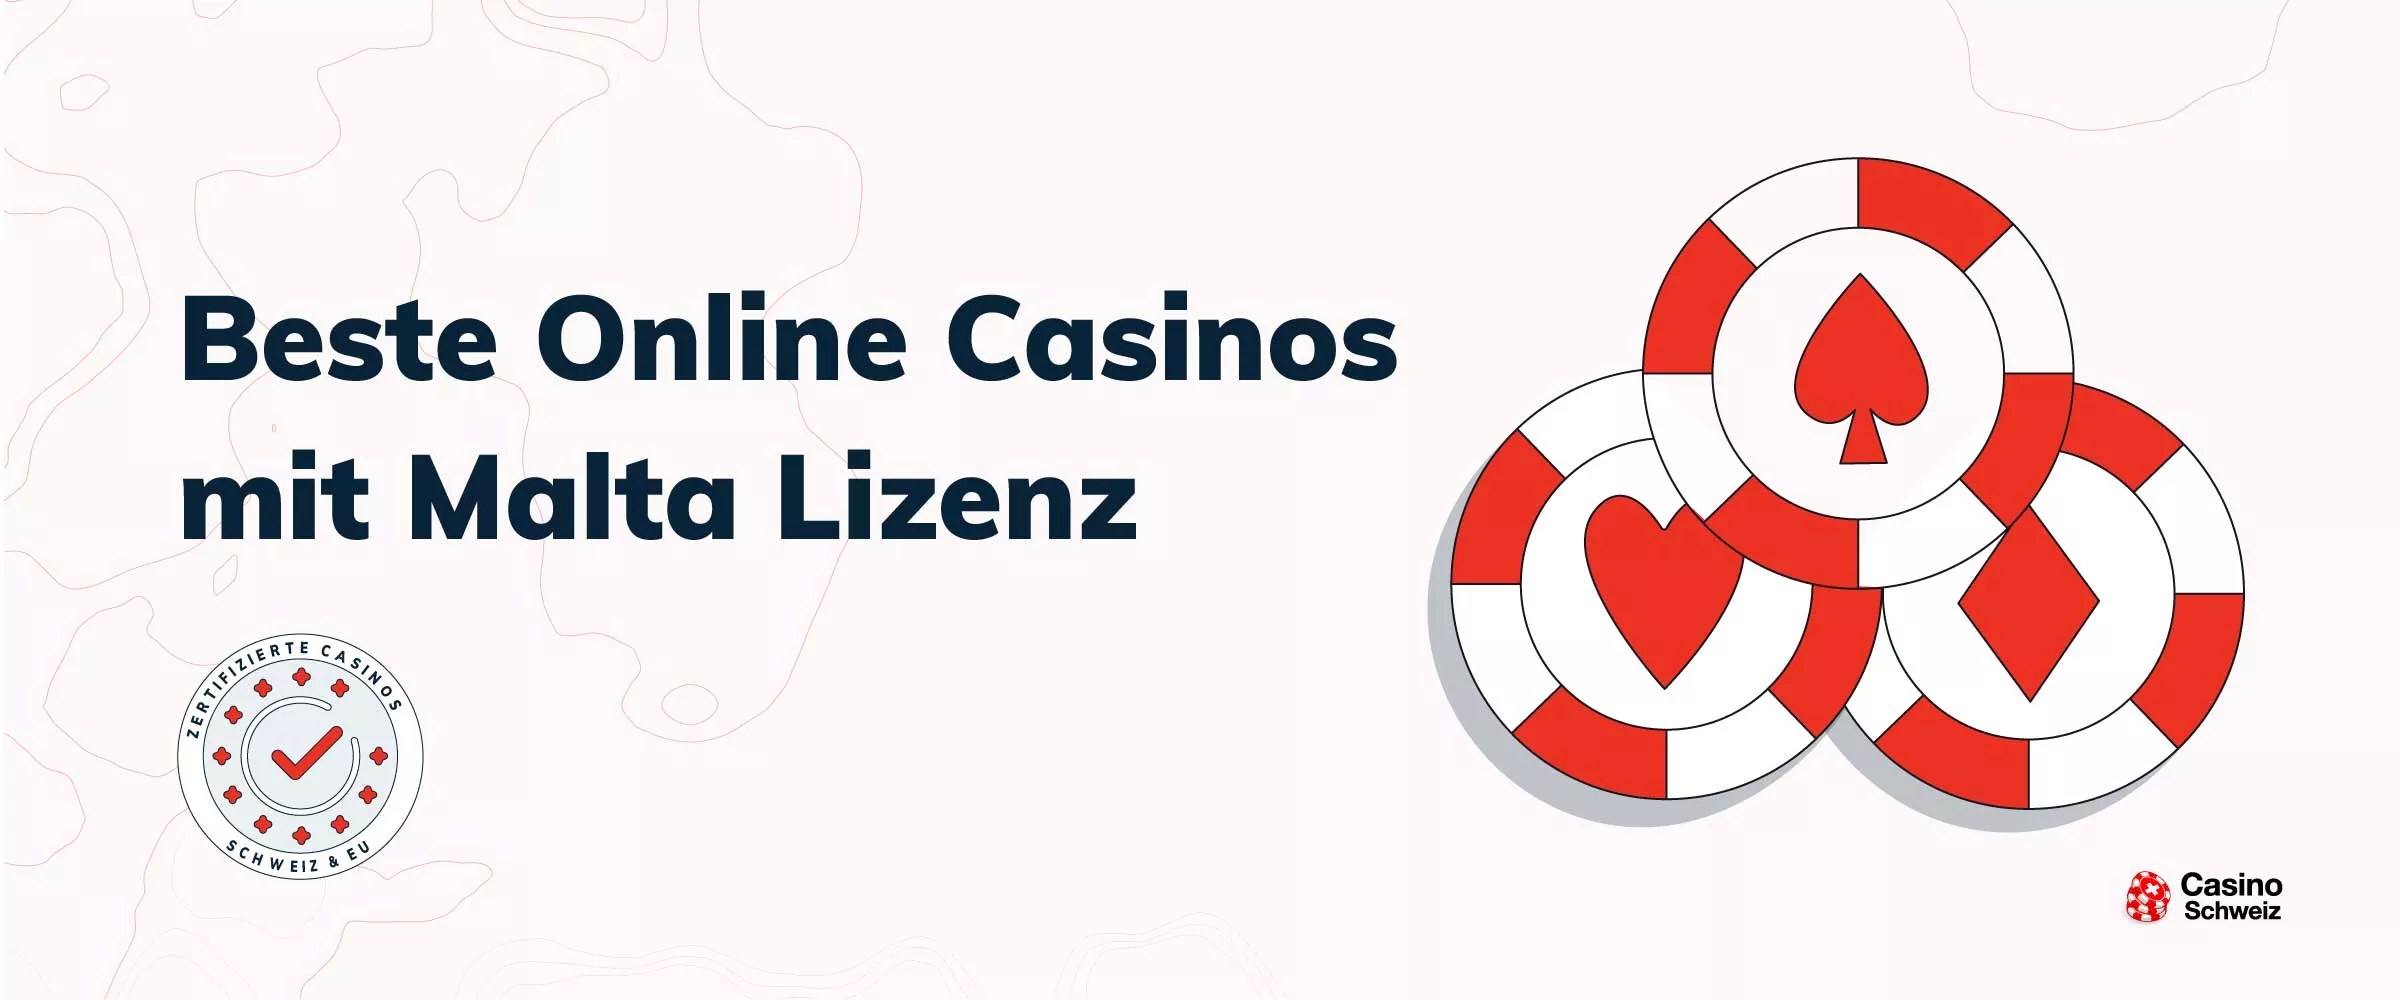 Ein überraschendes Tool, das Ihnen hilft seriöse Online Casinos für Österreich